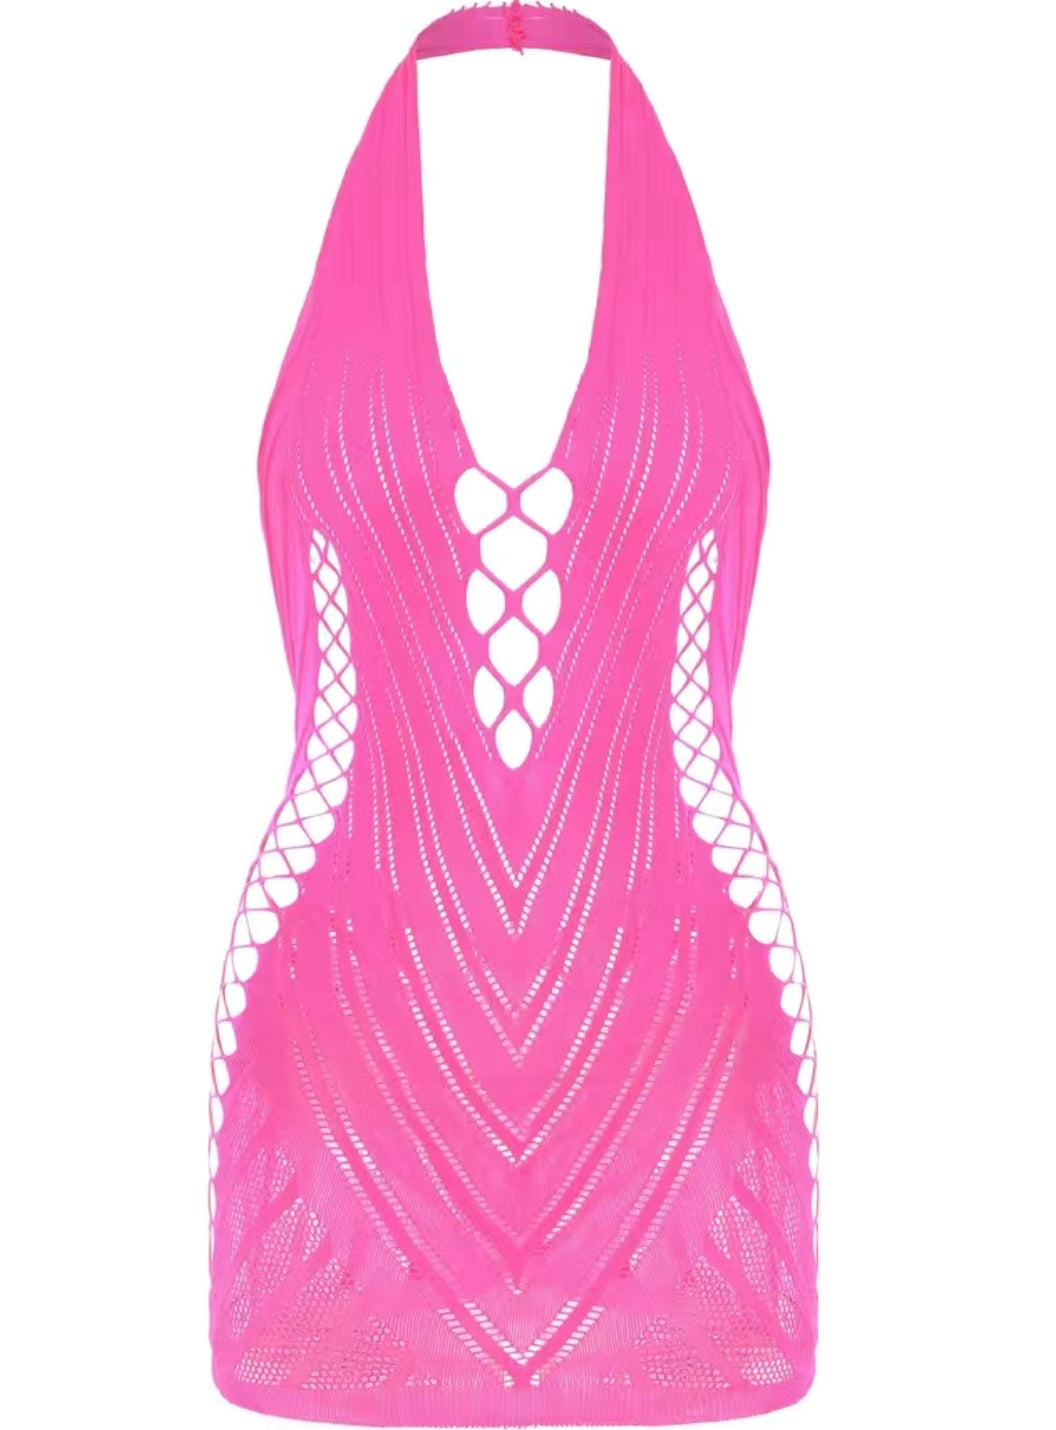 Pinky bodycon dress